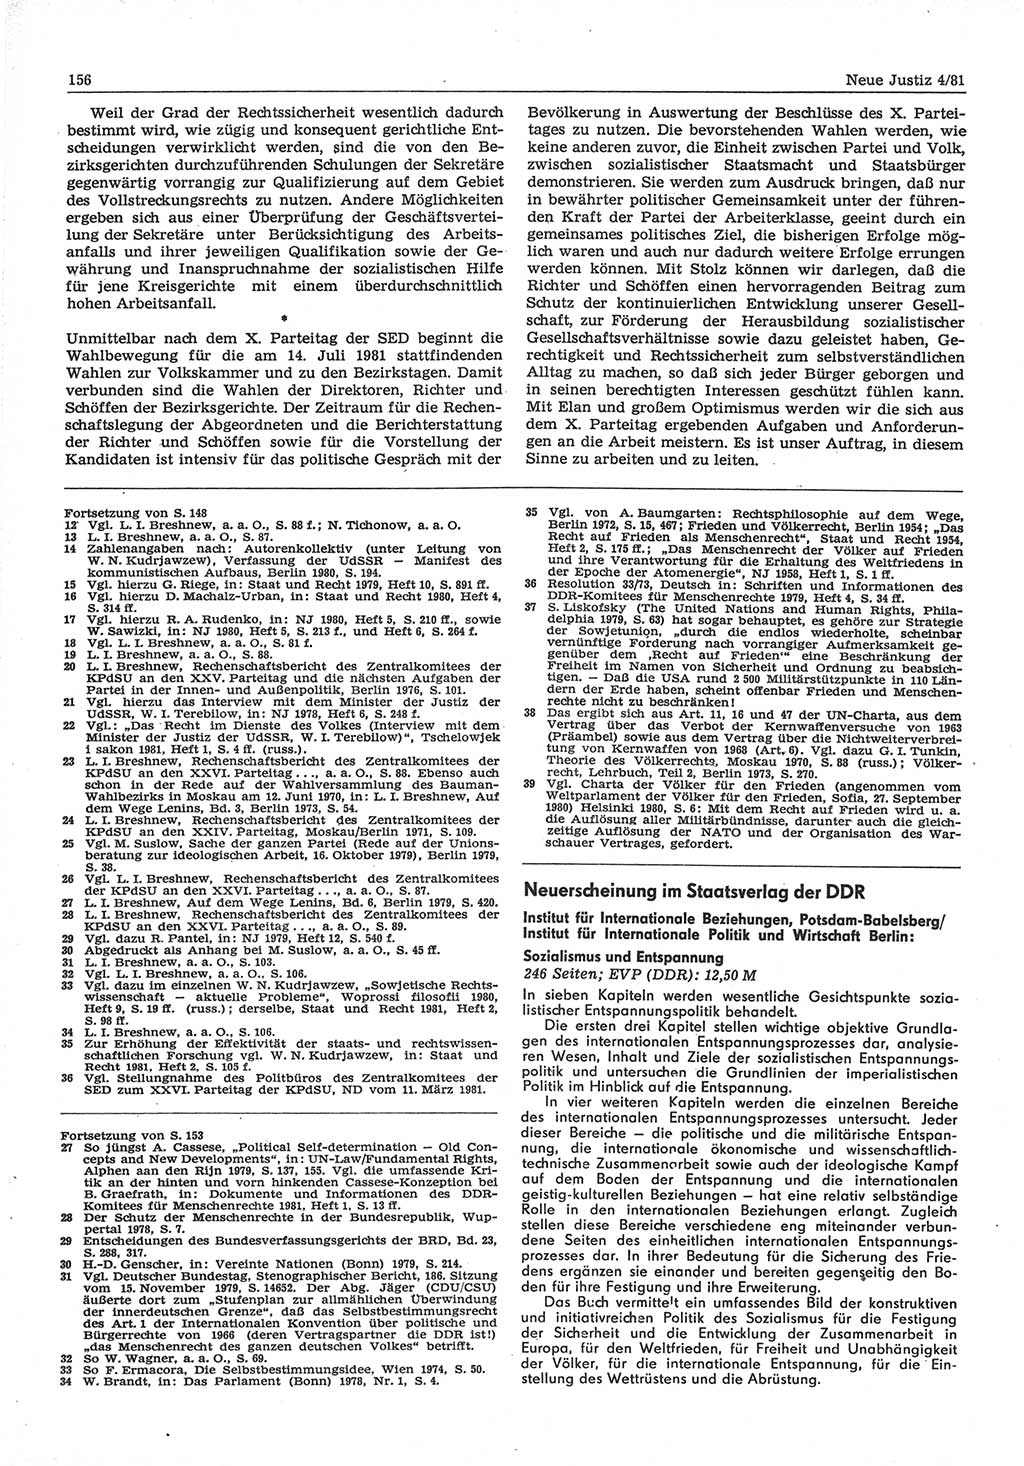 Neue Justiz (NJ), Zeitschrift für sozialistisches Recht und Gesetzlichkeit [Deutsche Demokratische Republik (DDR)], 35. Jahrgang 1981, Seite 156 (NJ DDR 1981, S. 156)